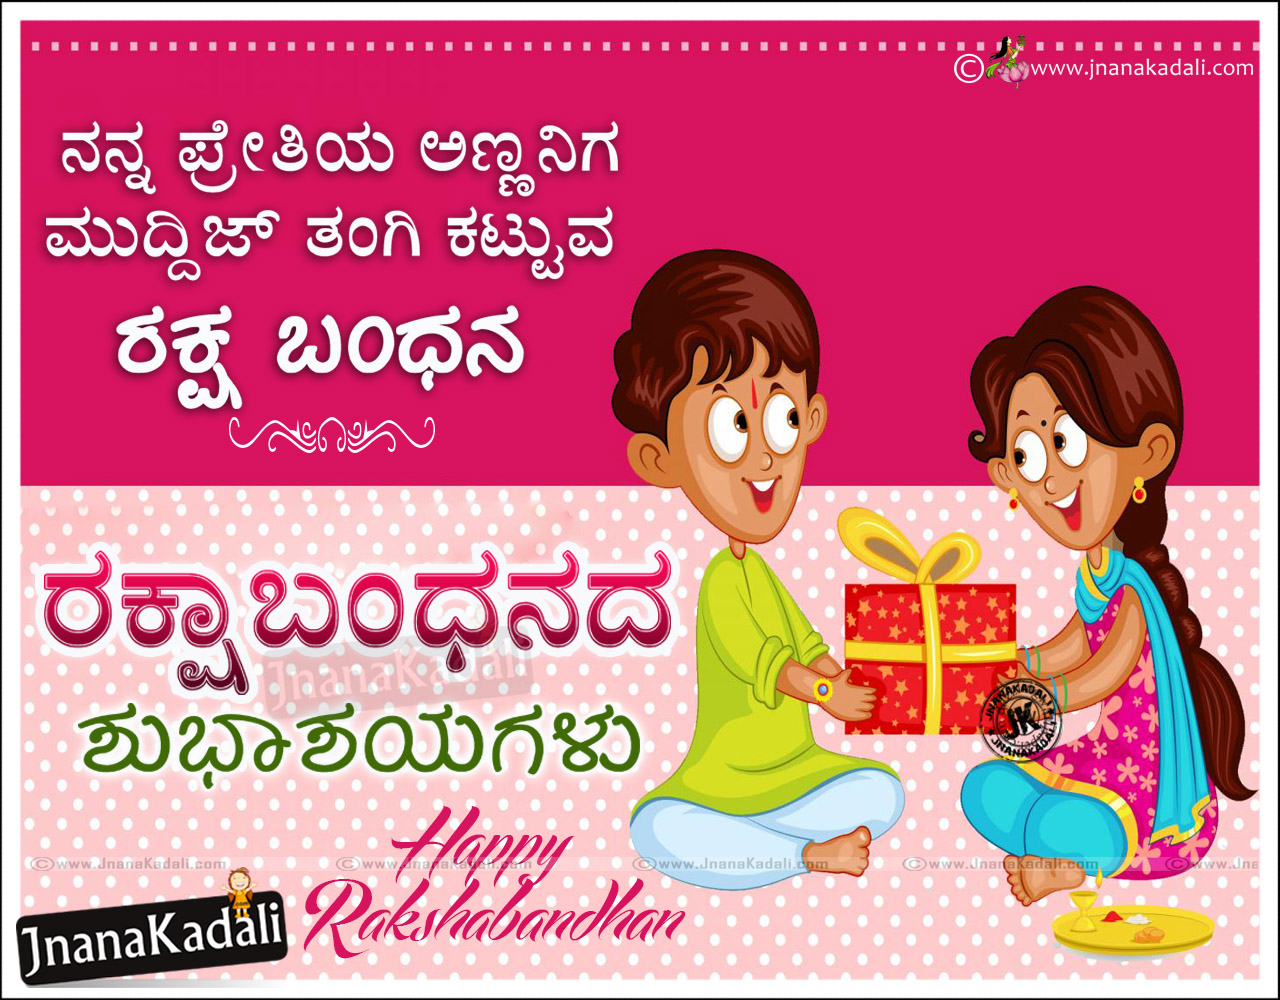 Kannada Nice Raksha Bandhan Quotations Wallpapers And Messages Online Jnana Kadali Com Telugu Quotes English Quotes Hindi Quotes Tamil Quotes Dharmasandehalu